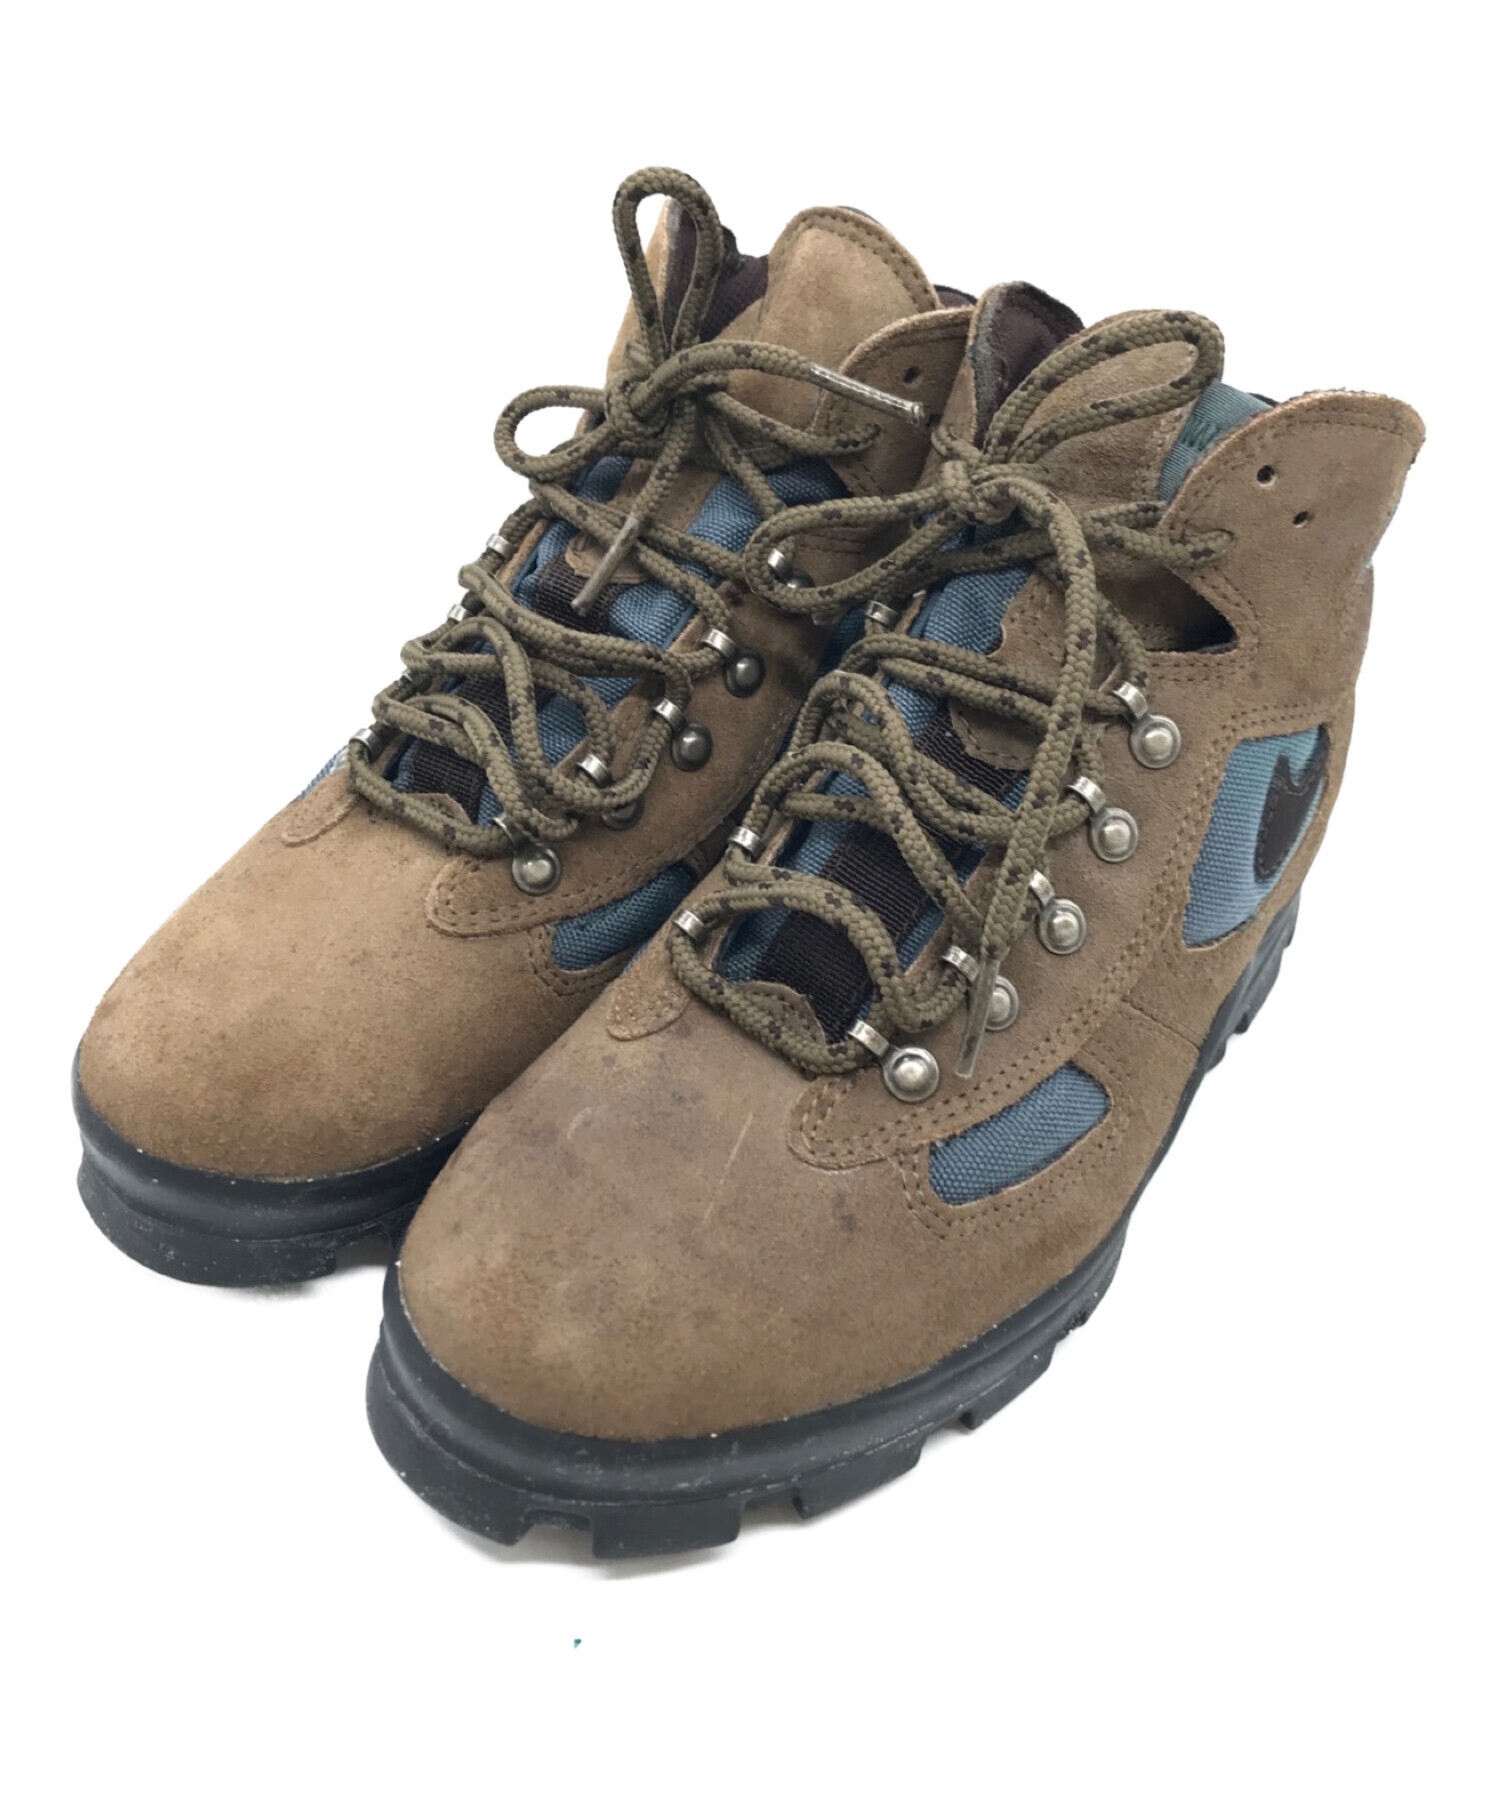 NIKE ACG (ナイキエージーシー) Air Hiking Boots ブラウン サイズ:24